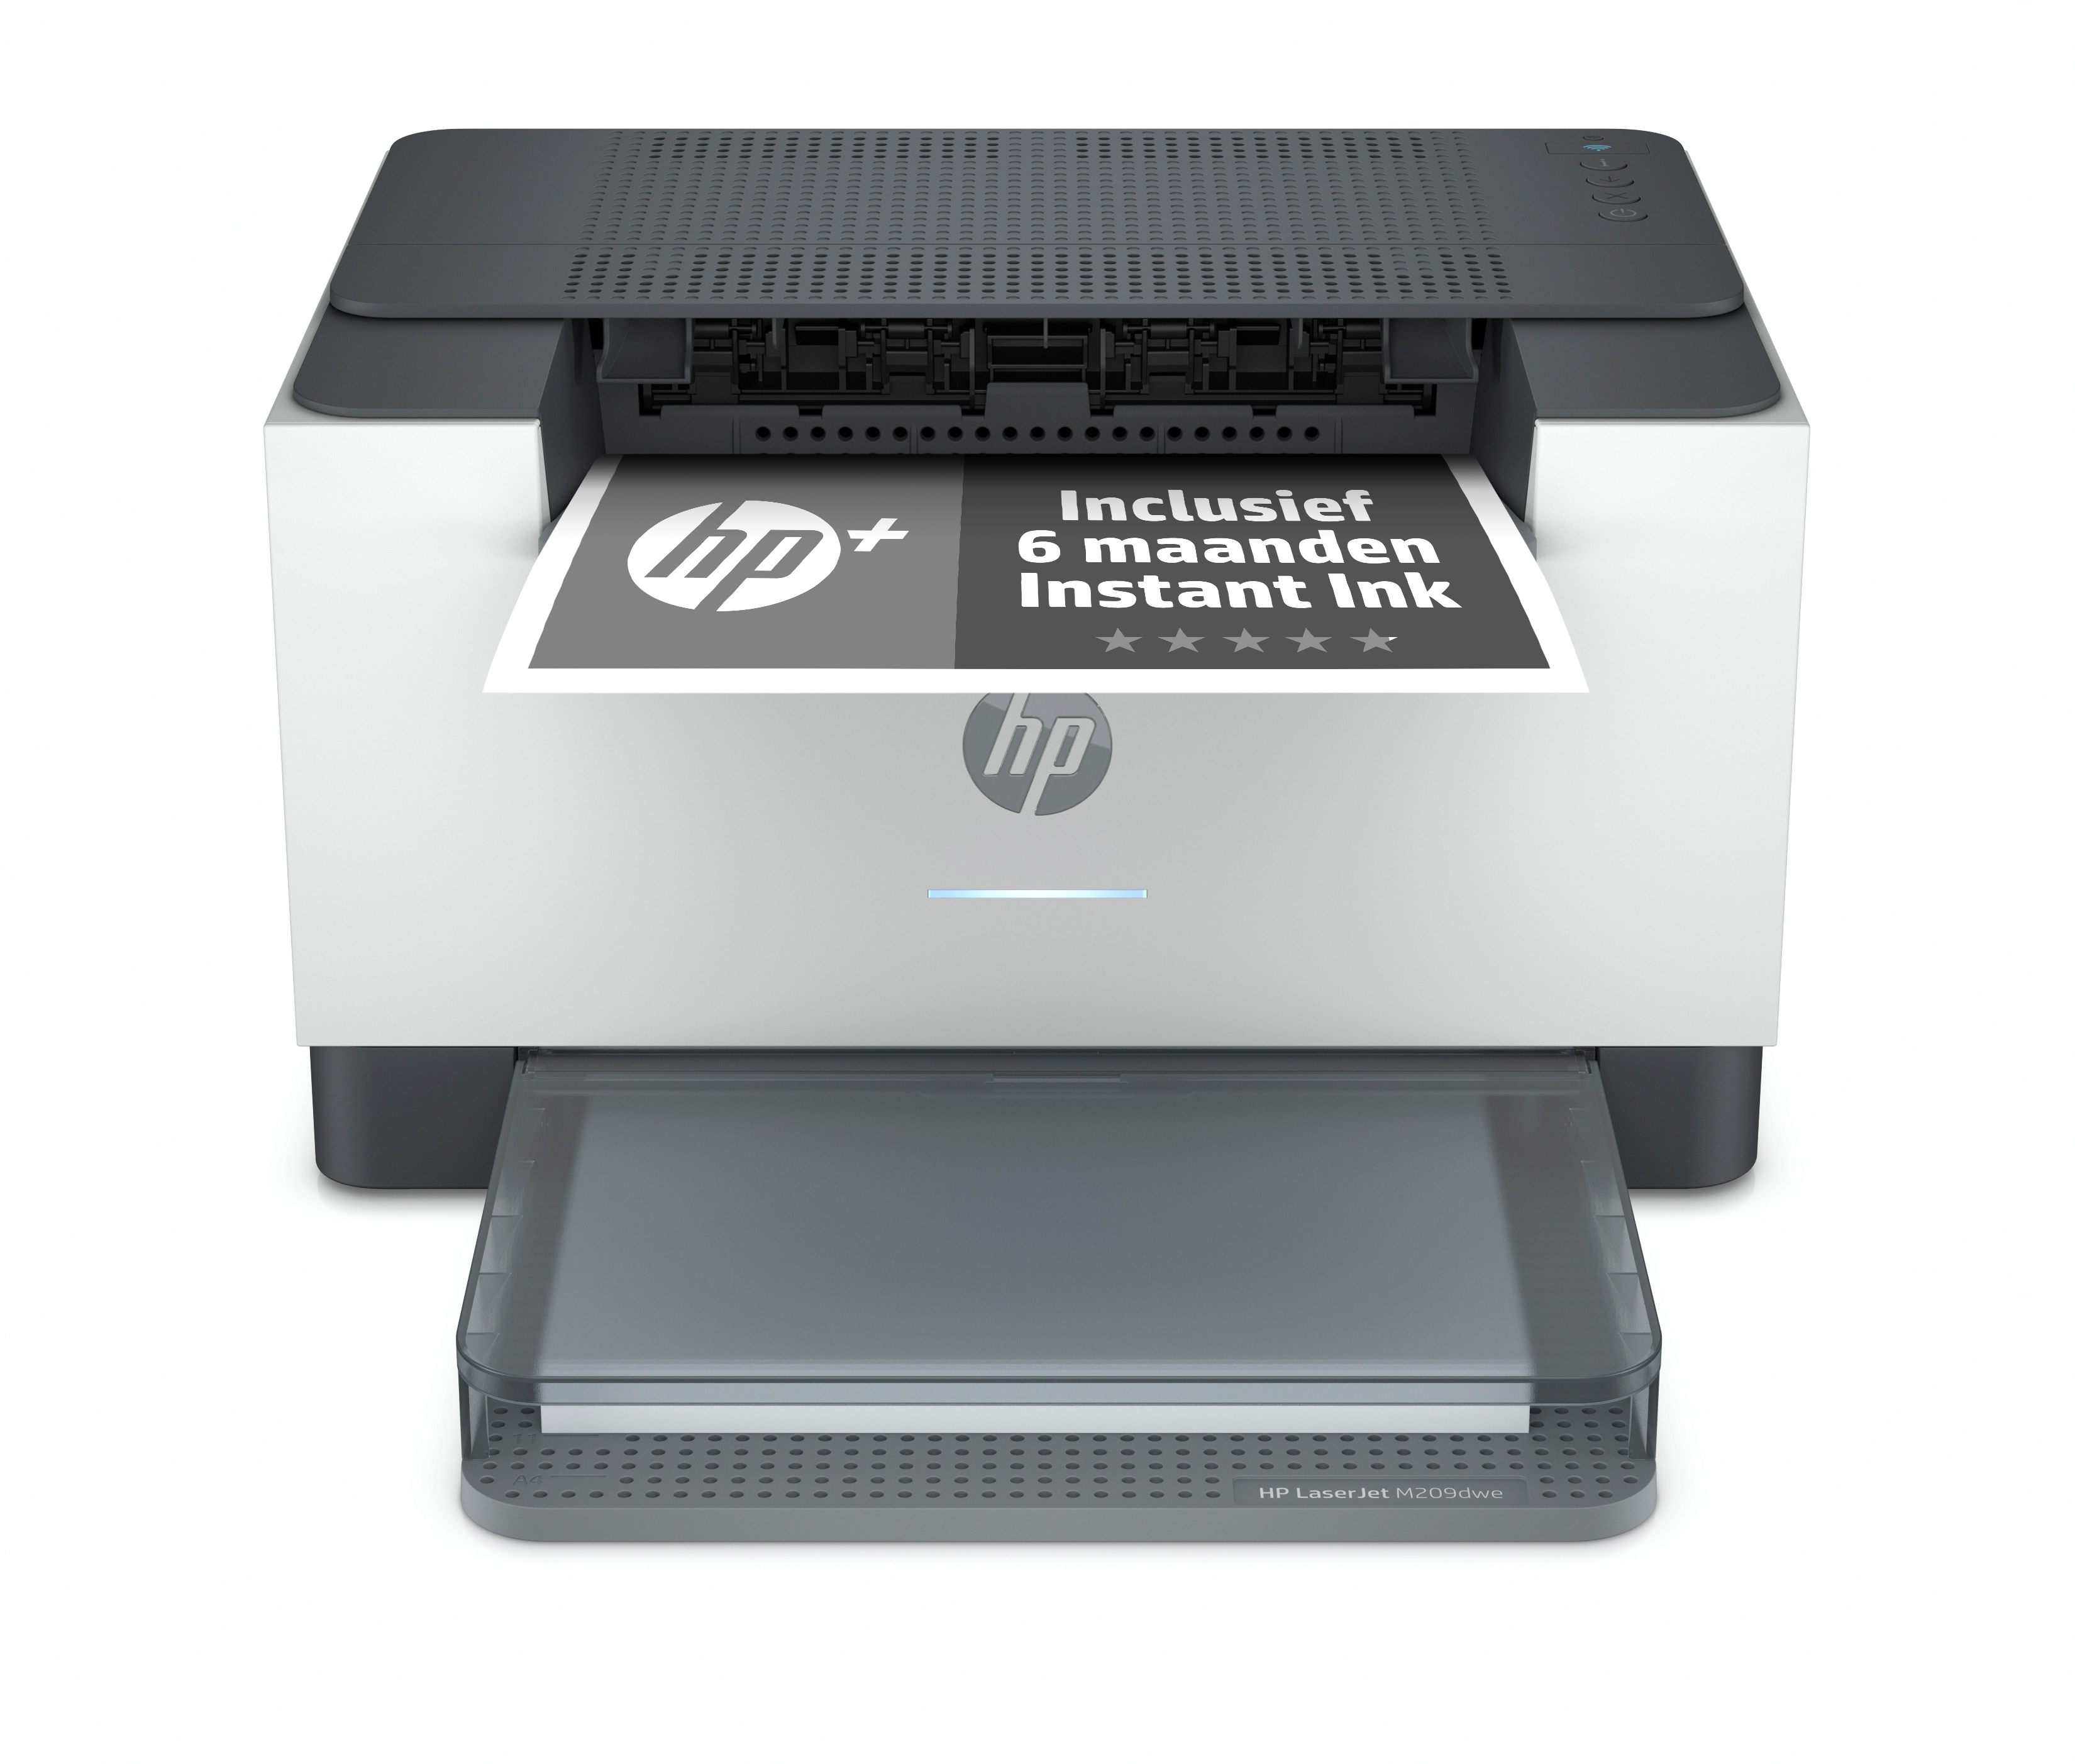 HP LaserJet HP LaserJet M209dwe printer, Zwart-wit, Printer voor Kleine kantoren, Print, Draadloos; HP+; Geschikt voor HP Instant Ink; Dubbelzijdig printen; JetIntelligence-cartridge